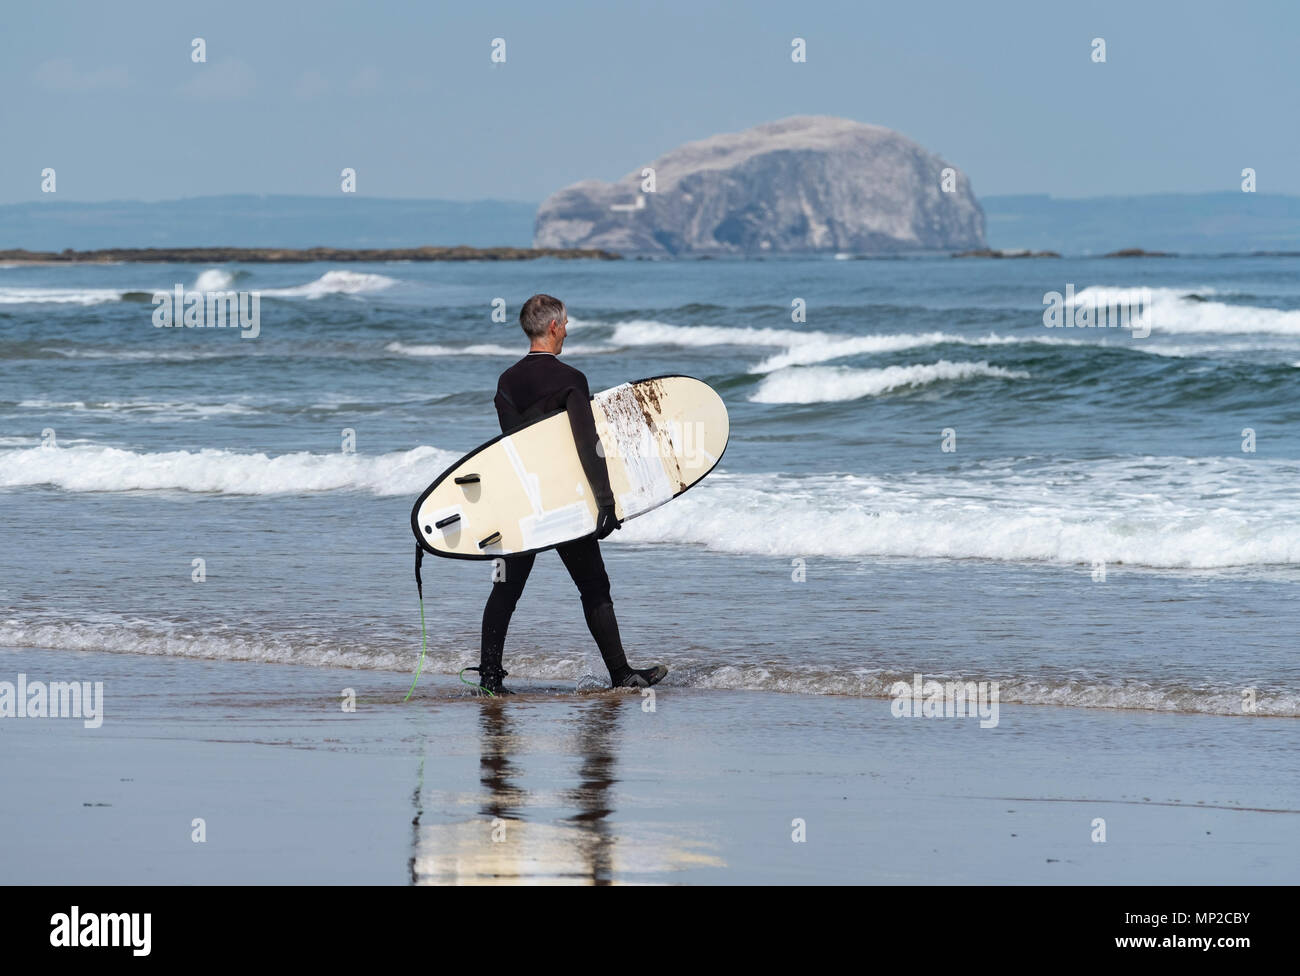 Ältere männliche Surfer trägt Surfbretter zu Meer bei Belhaven Strand, Bass Rock in Distanz, East Lothian, Schottland, Vereinigtes Königreich Stockfoto